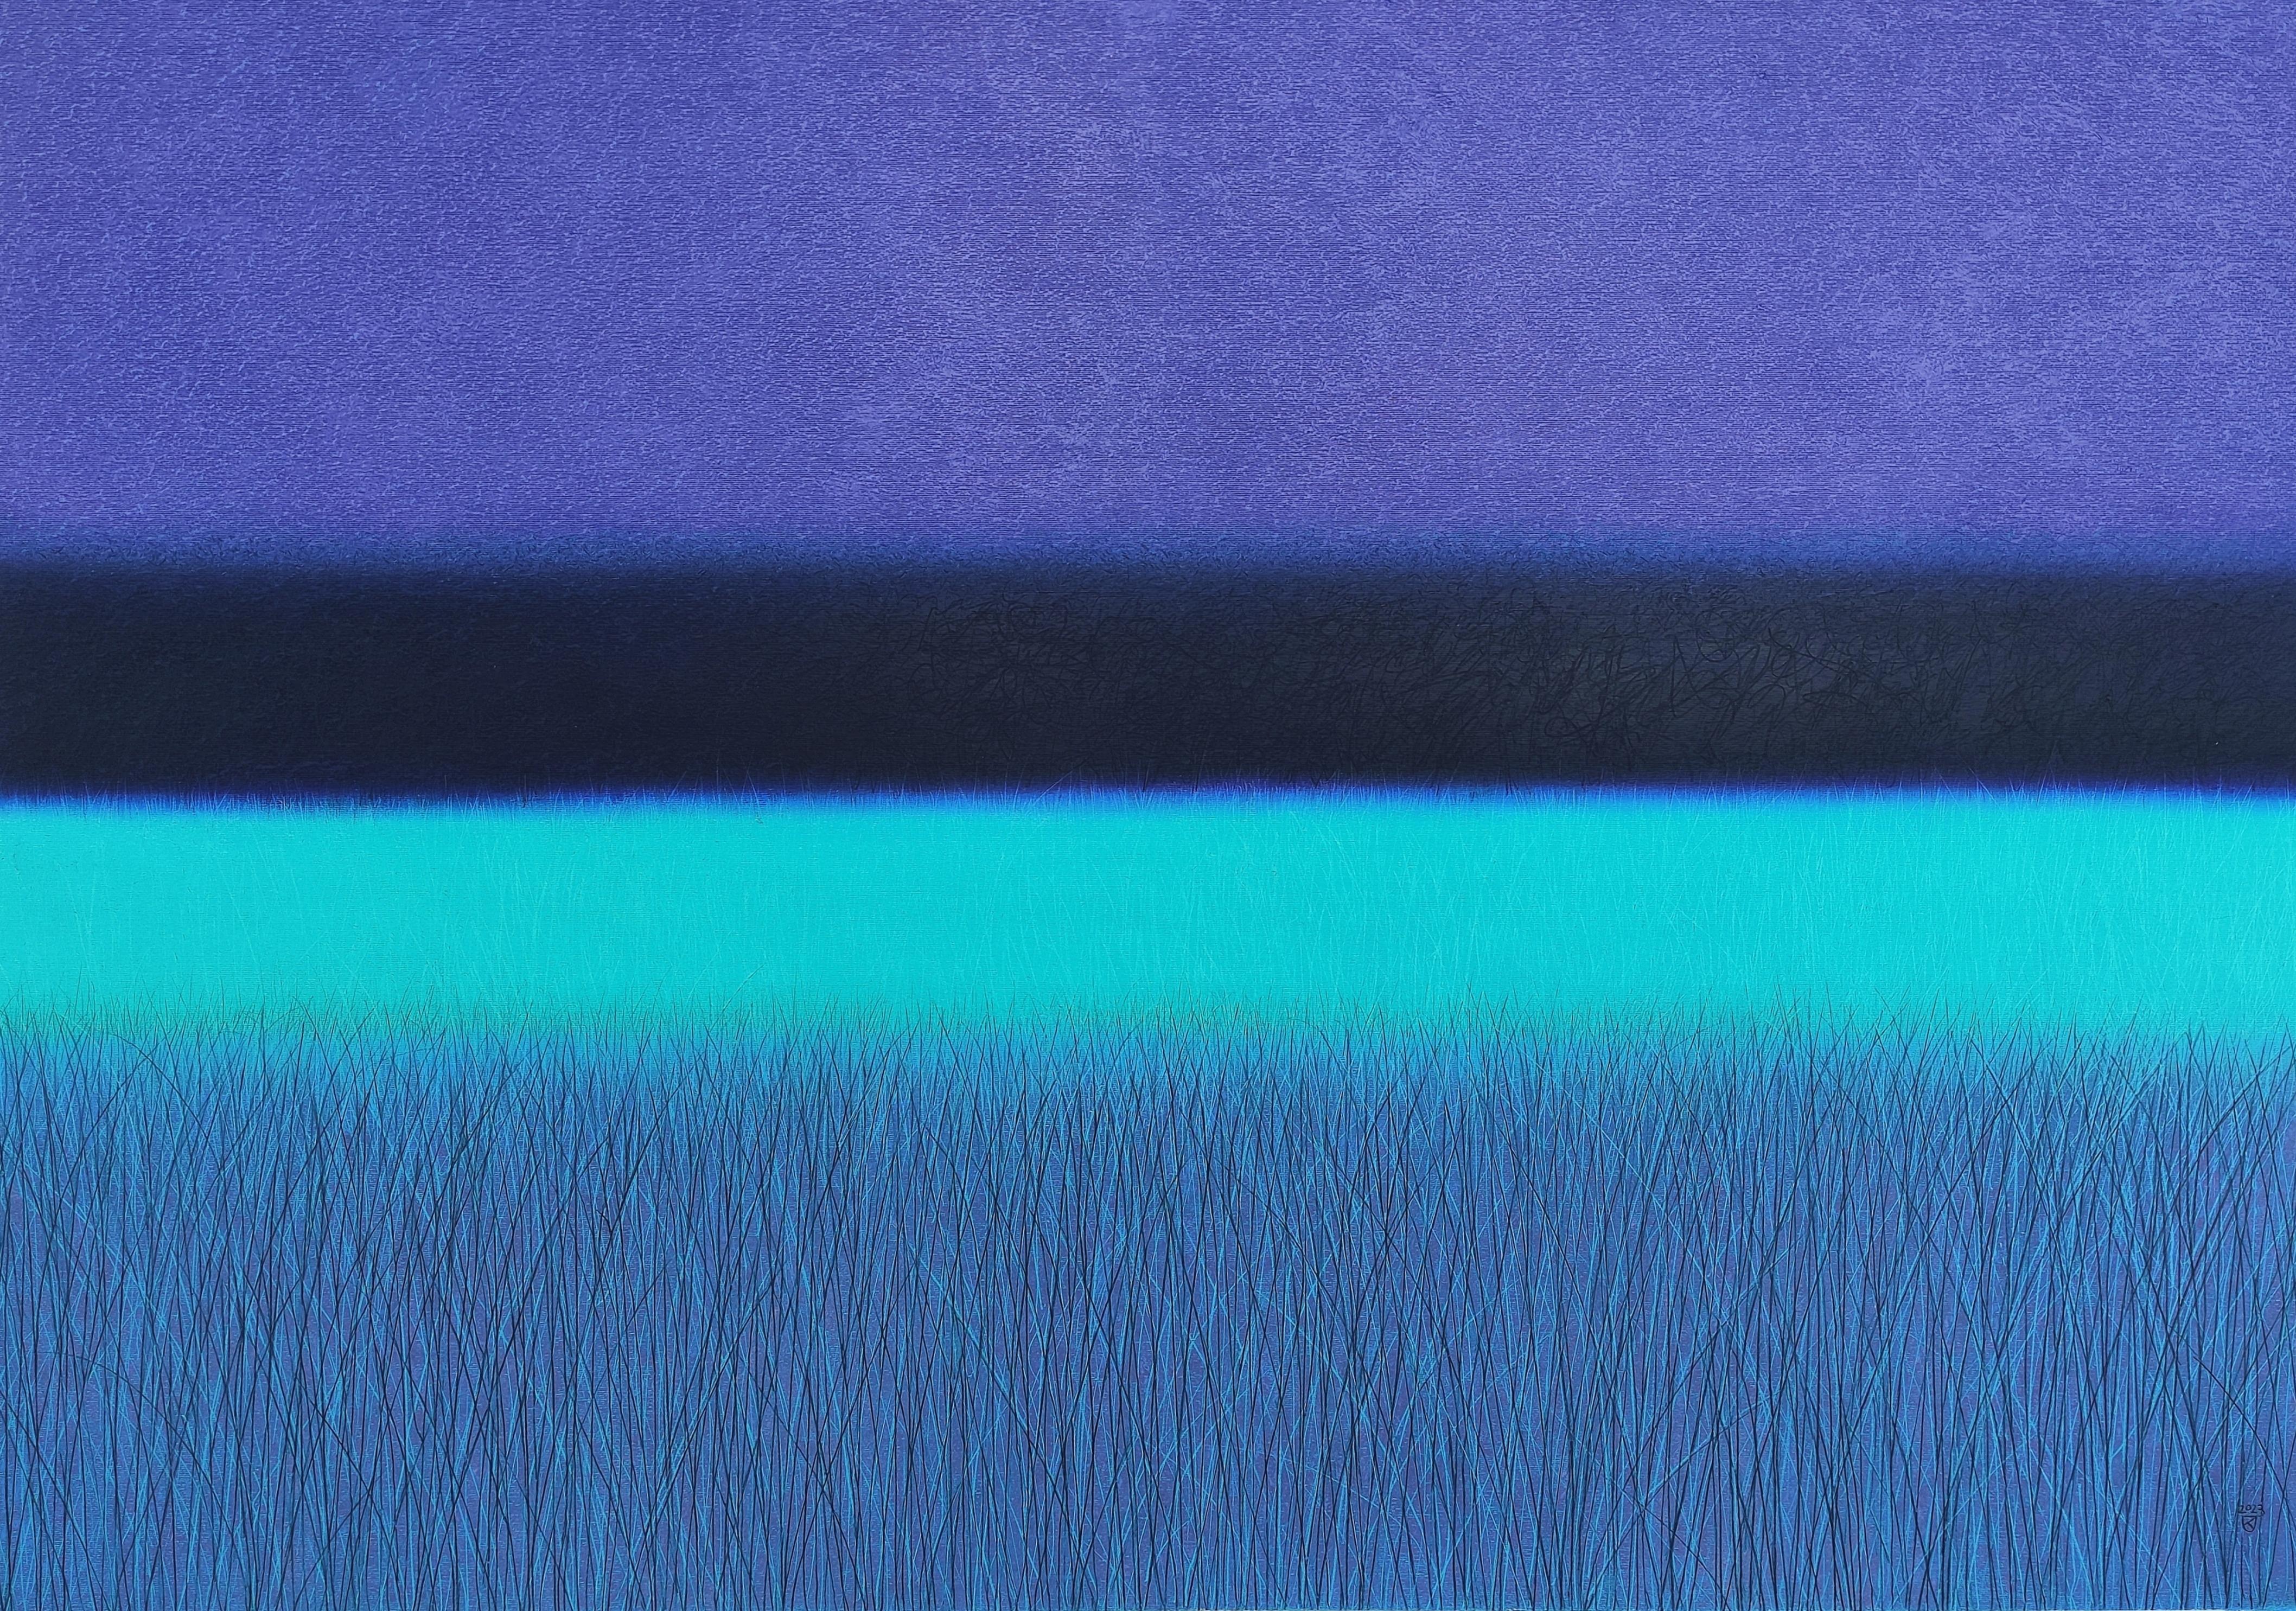 Turquoise Savannah  - Paysage contemporain peint au pastel à l'huile, couleurs vibrantes